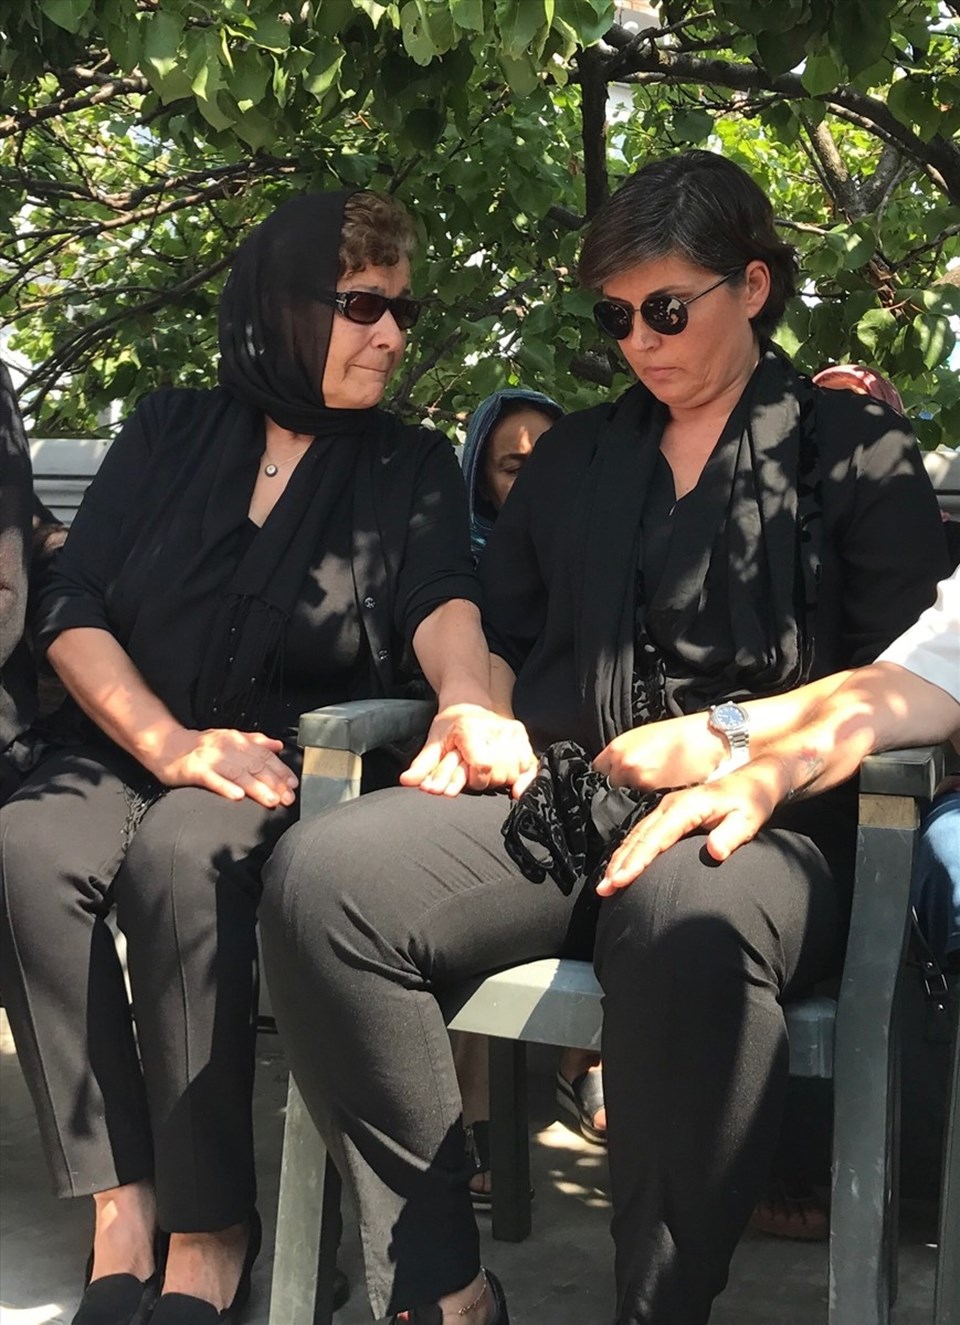 Cenaze töreninde Vatan Şaşmaz'ın annesi (solda) ve eşi yan yana bekledi.